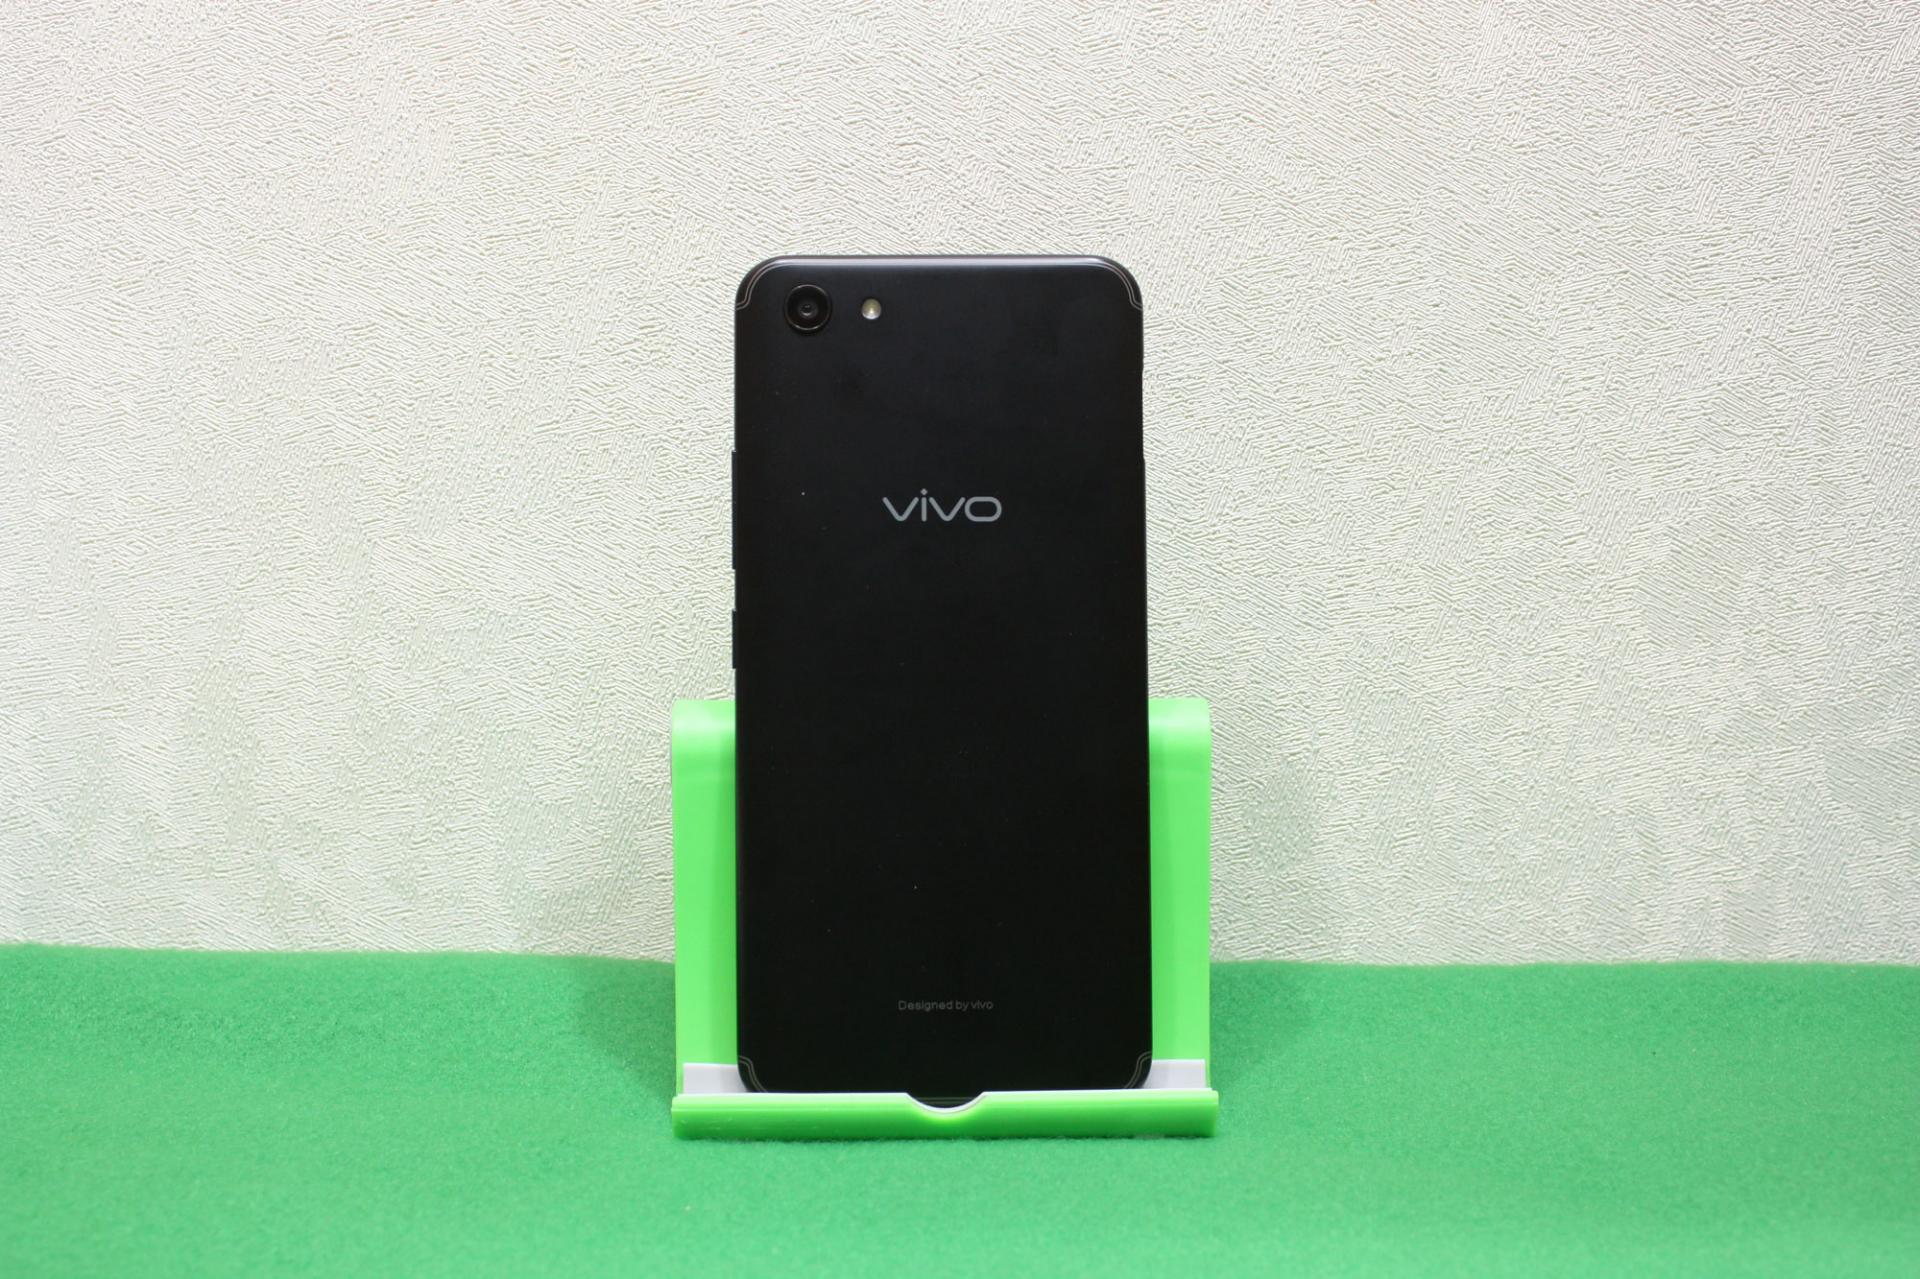 Обзор недорогого смартфона Vivo Y81